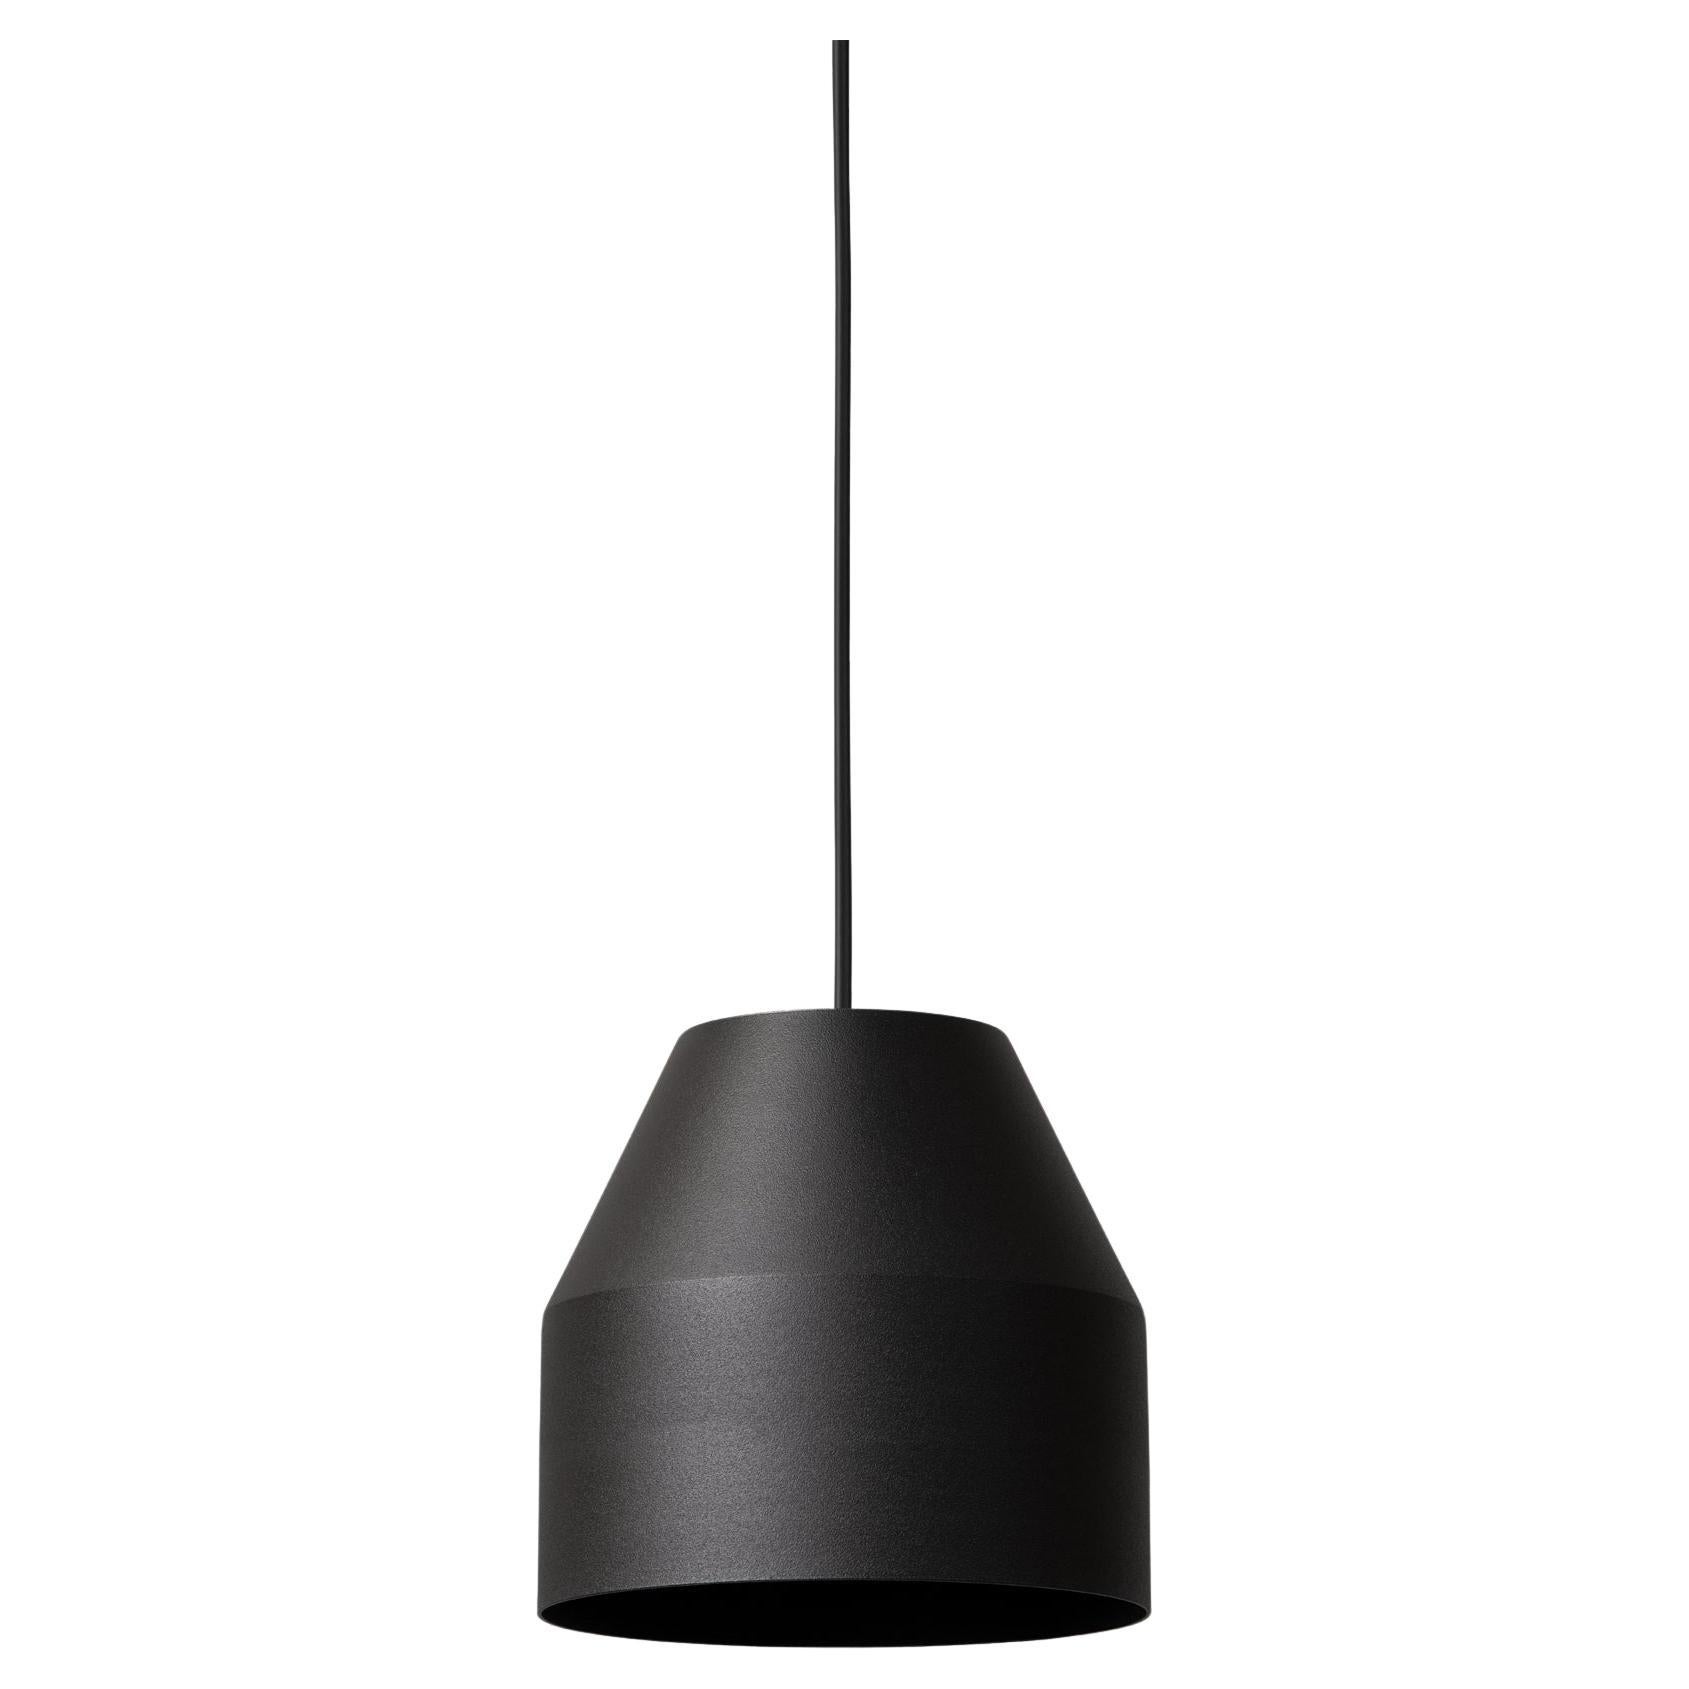 Big Black Cap Pendant Lamp by +kouple For Sale